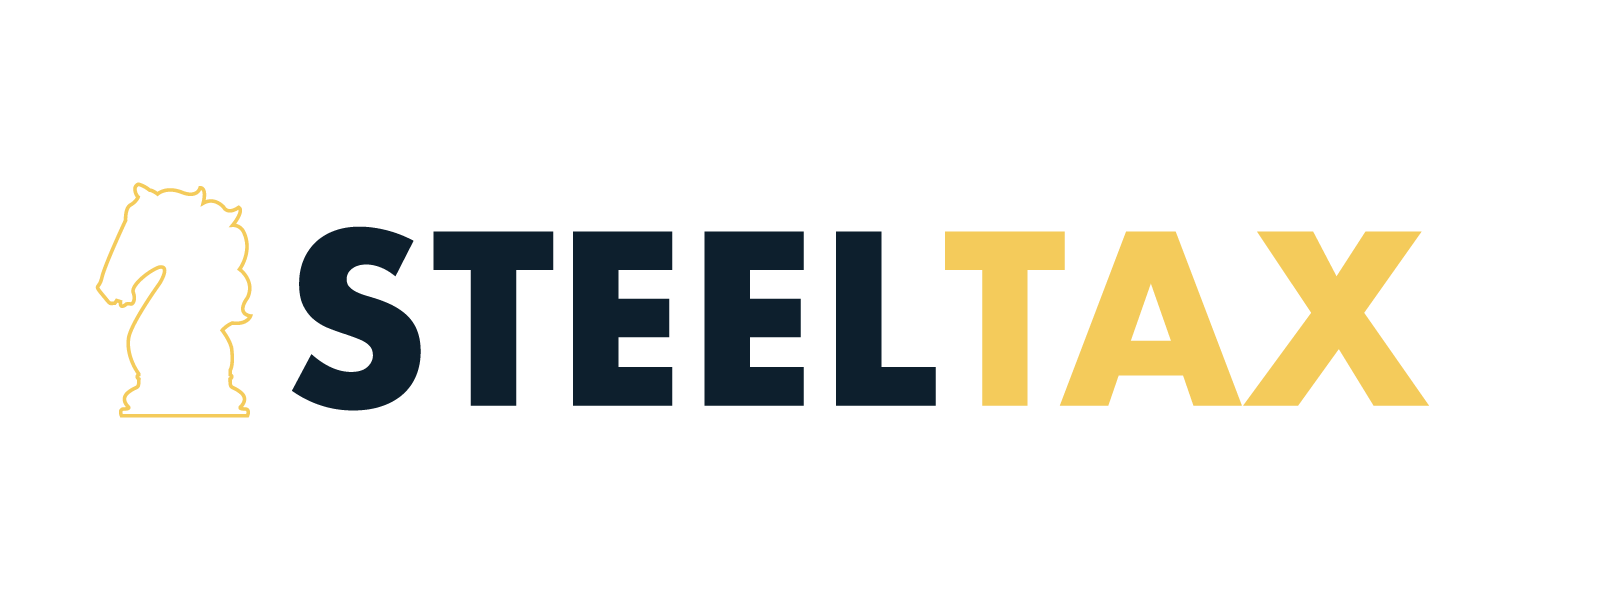 Steel Tax